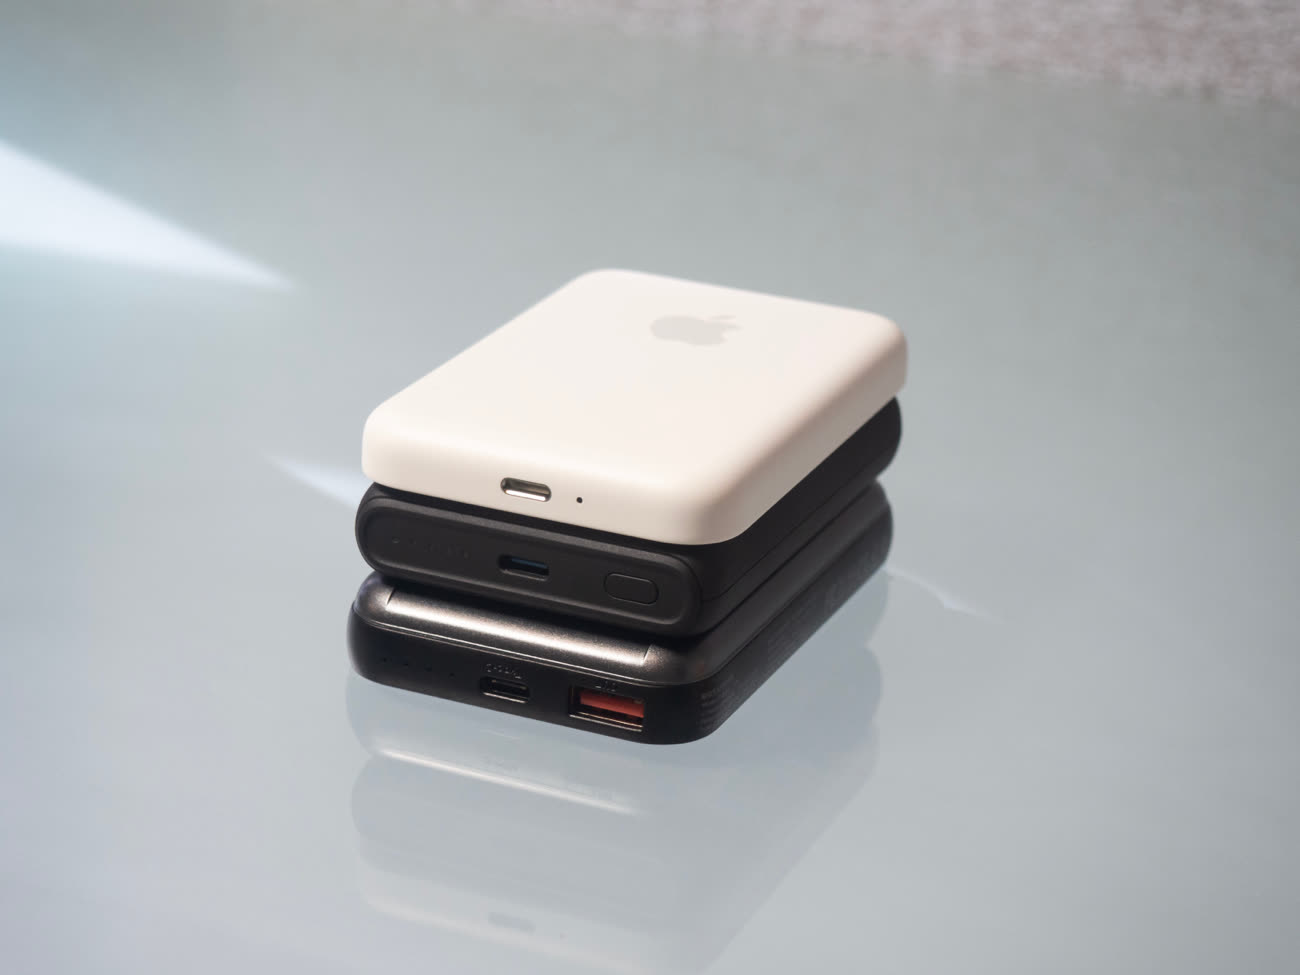 Aperçu de la batterie externe MagSafe d'Apple